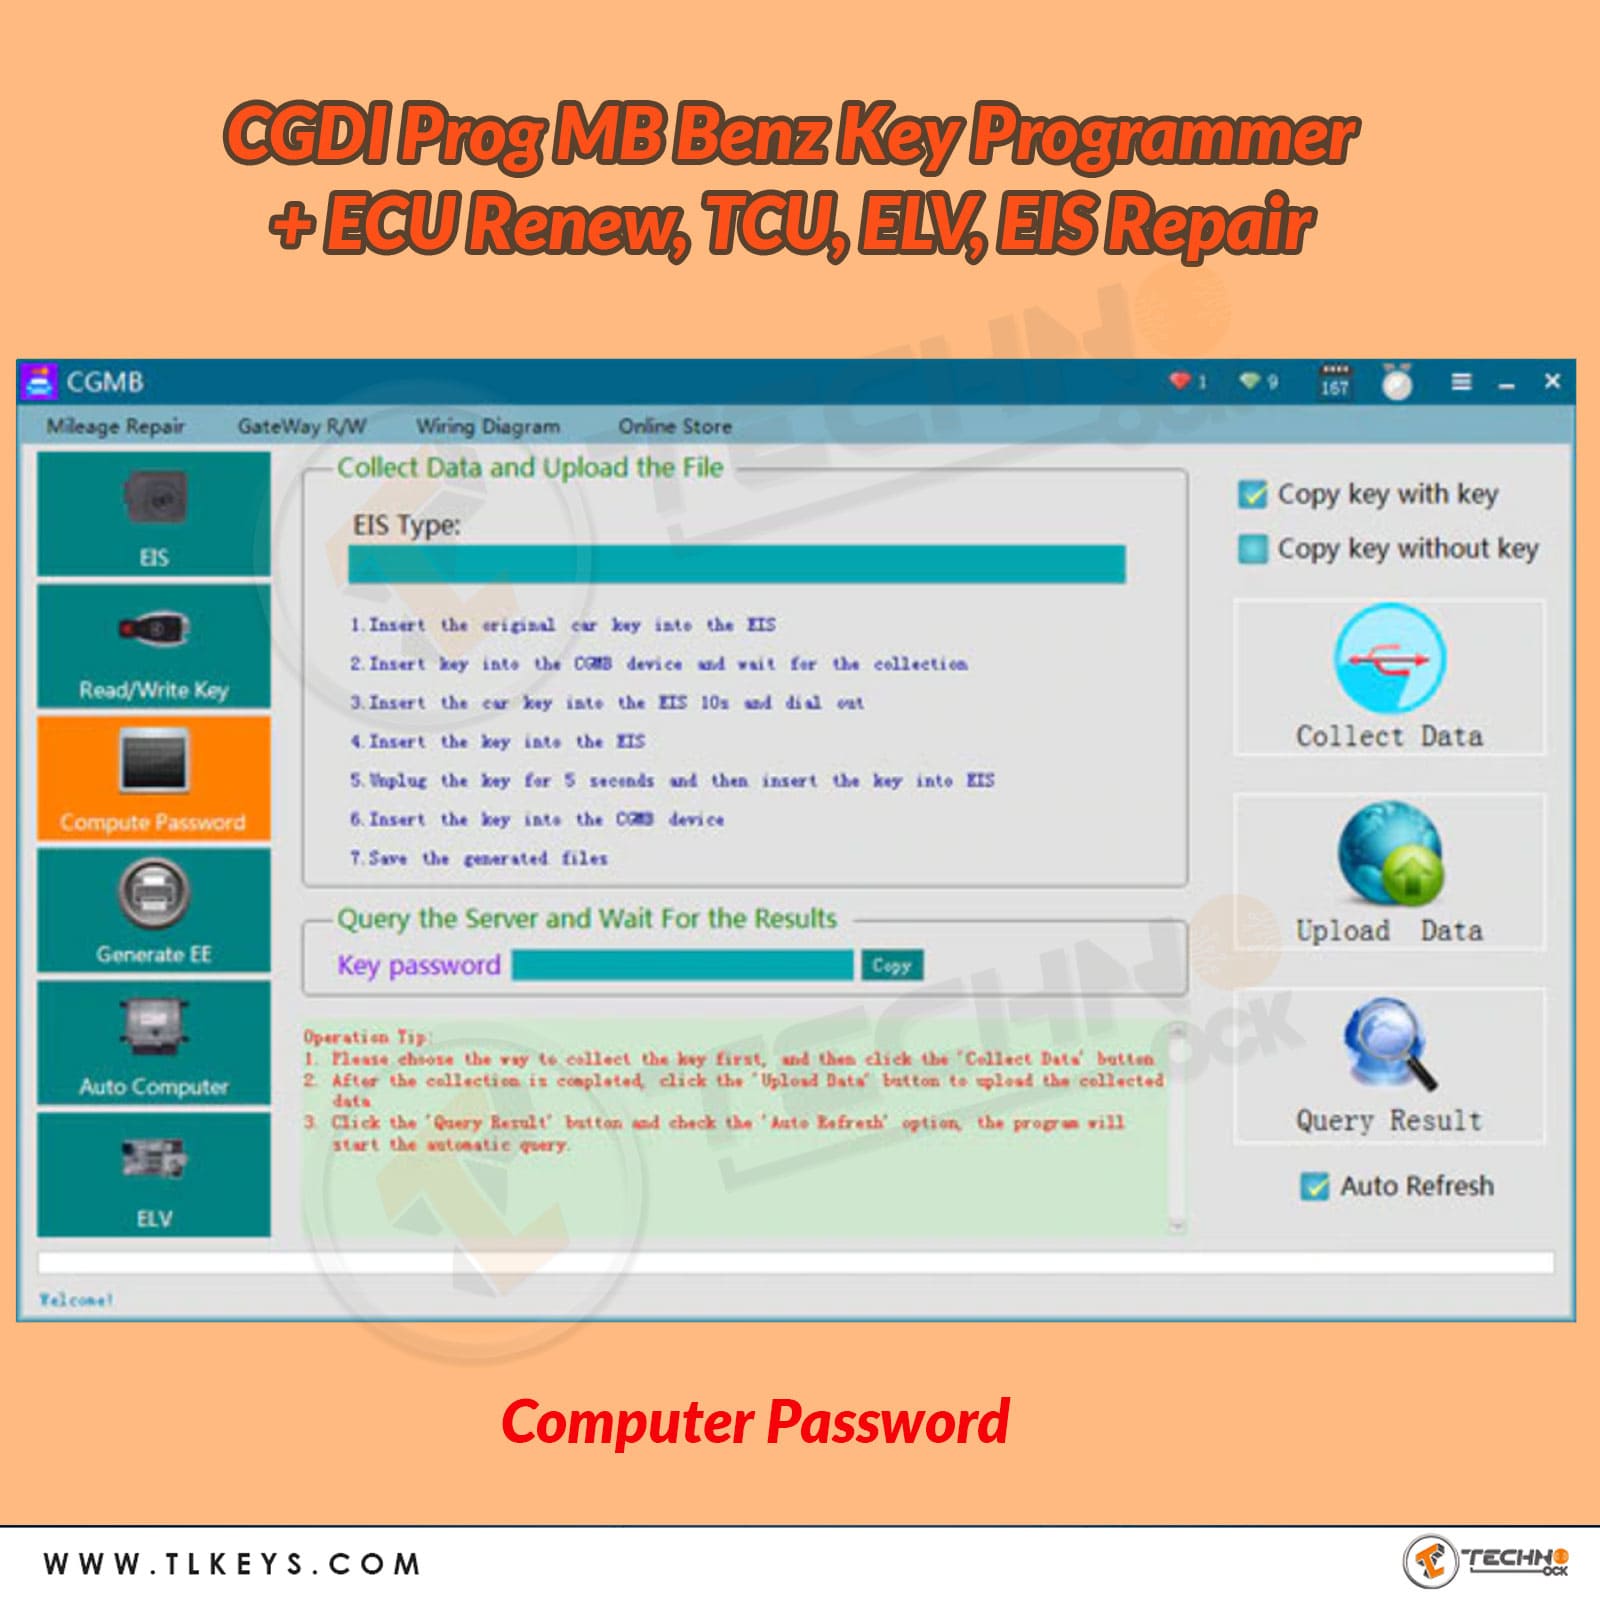 CGDI MB Prog Computer Password